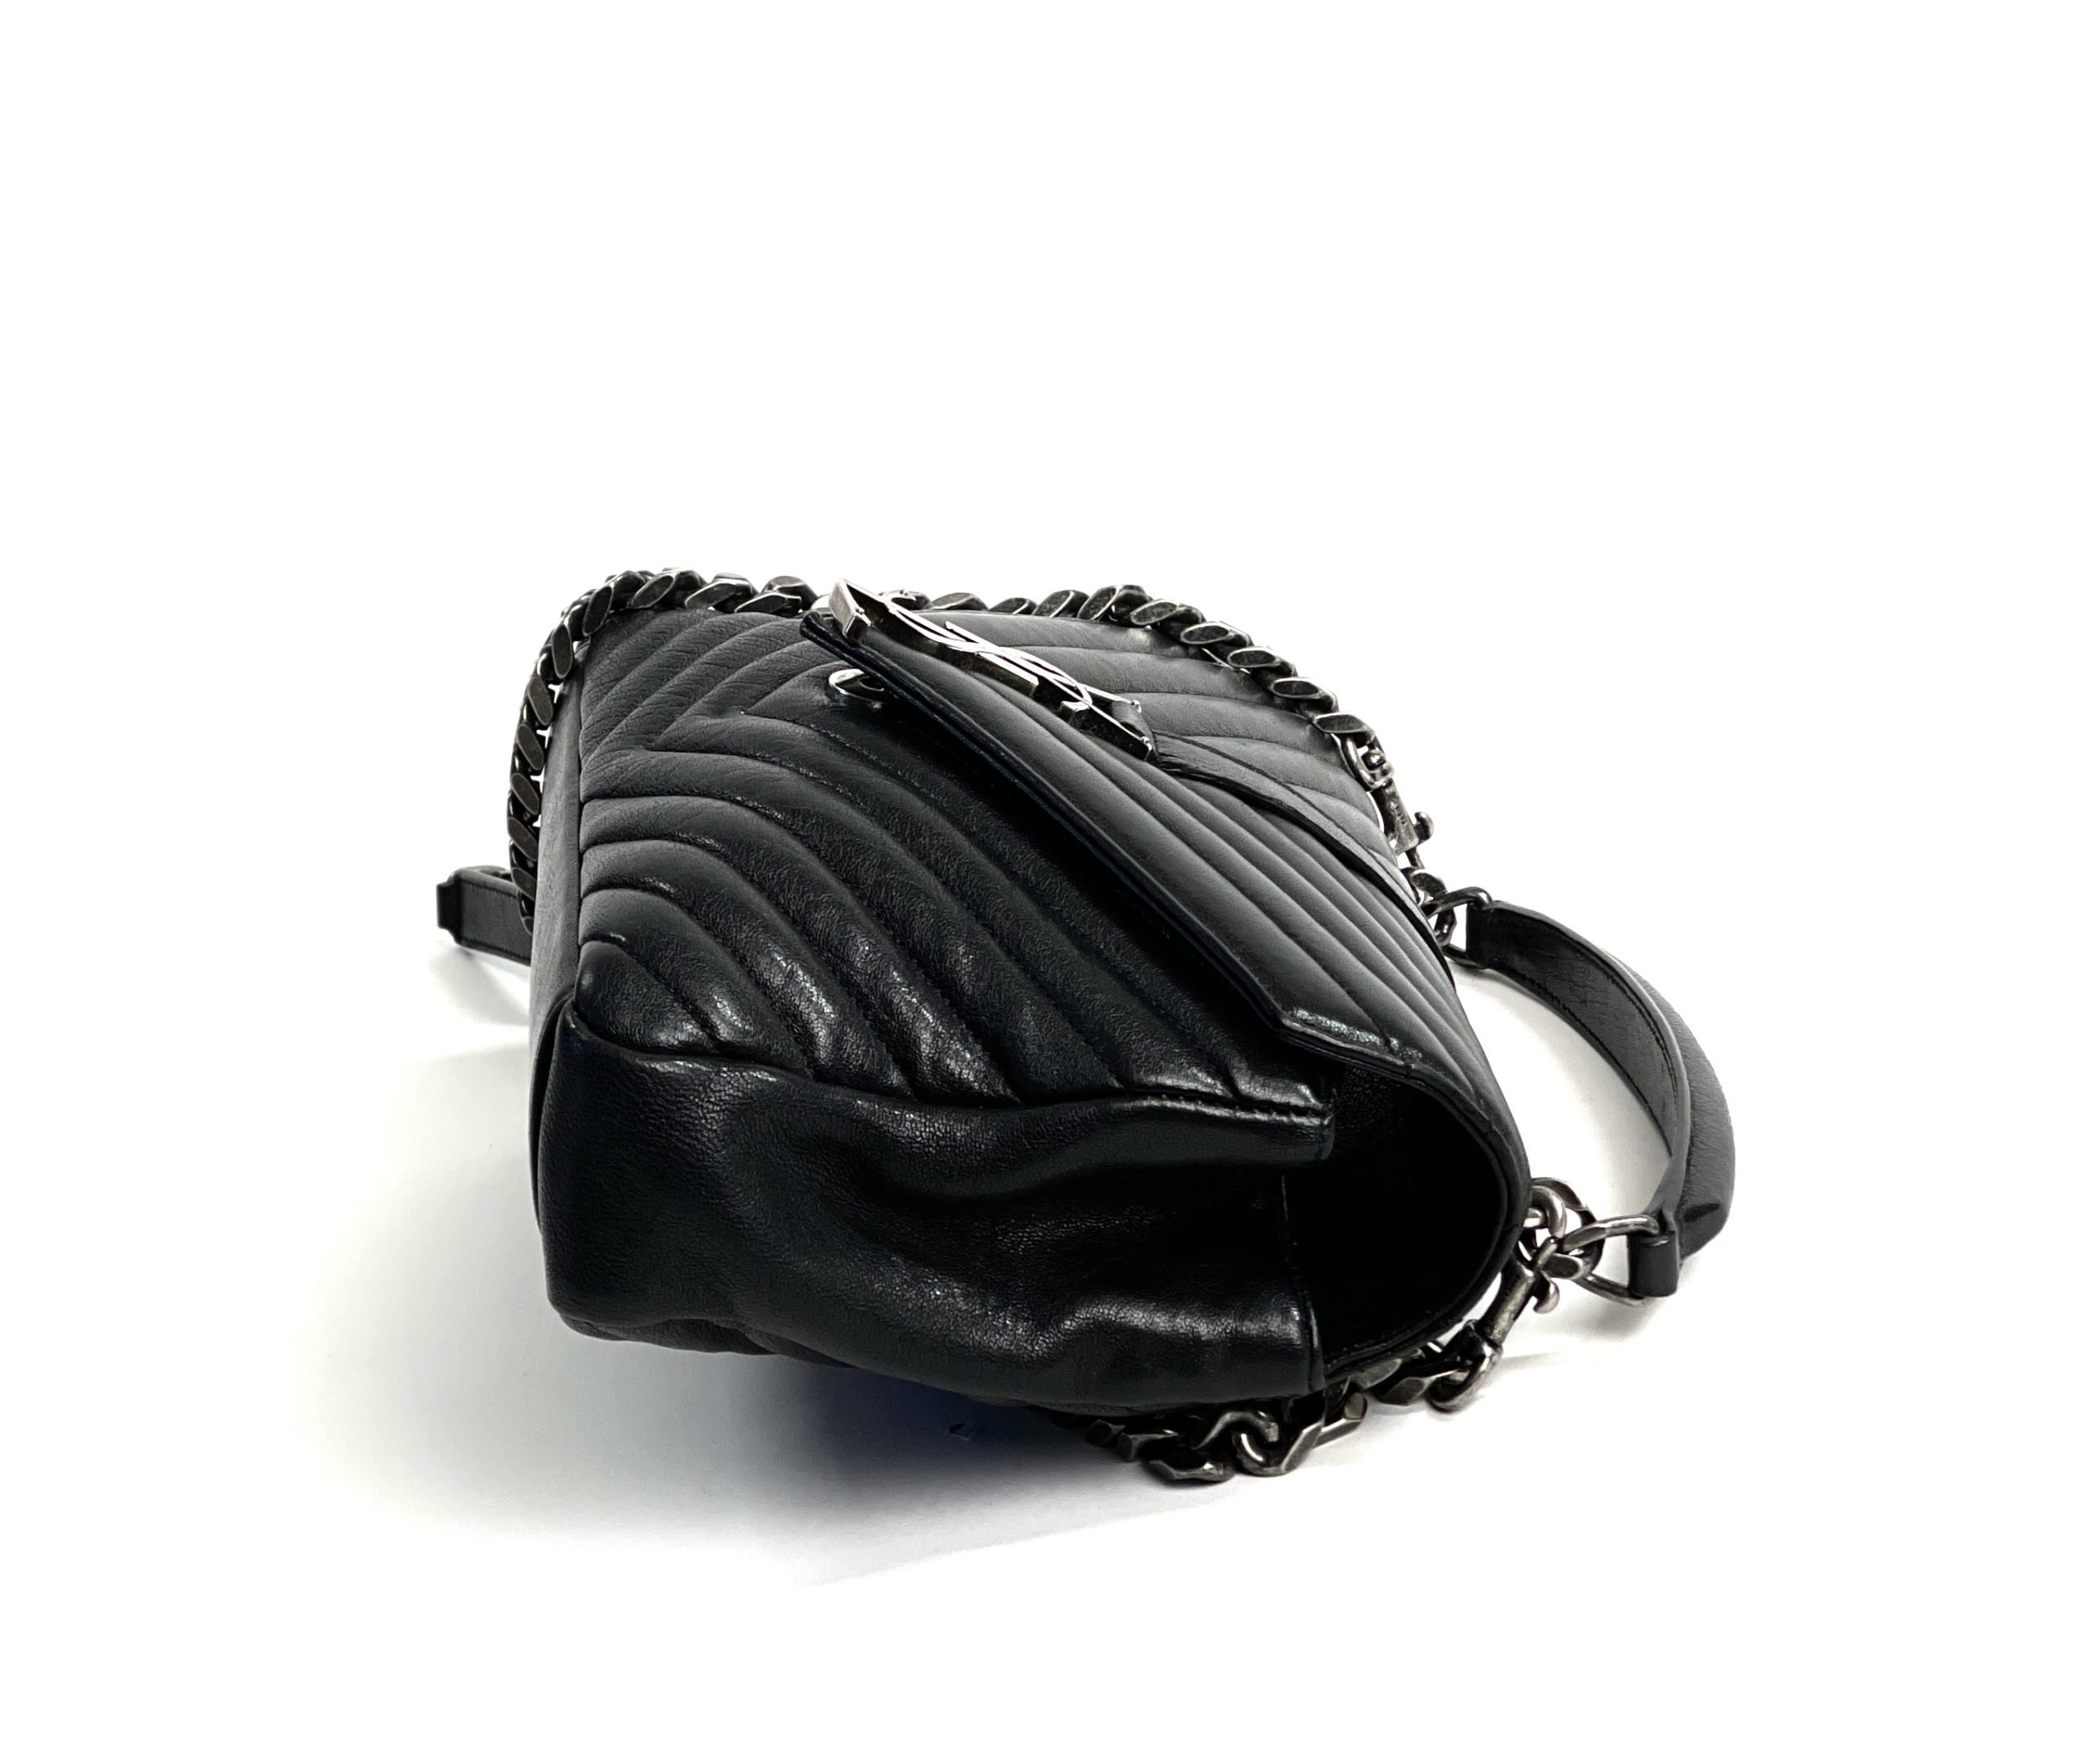 Chanel Black Lambskin Surpique Chevron Shoulder Bag